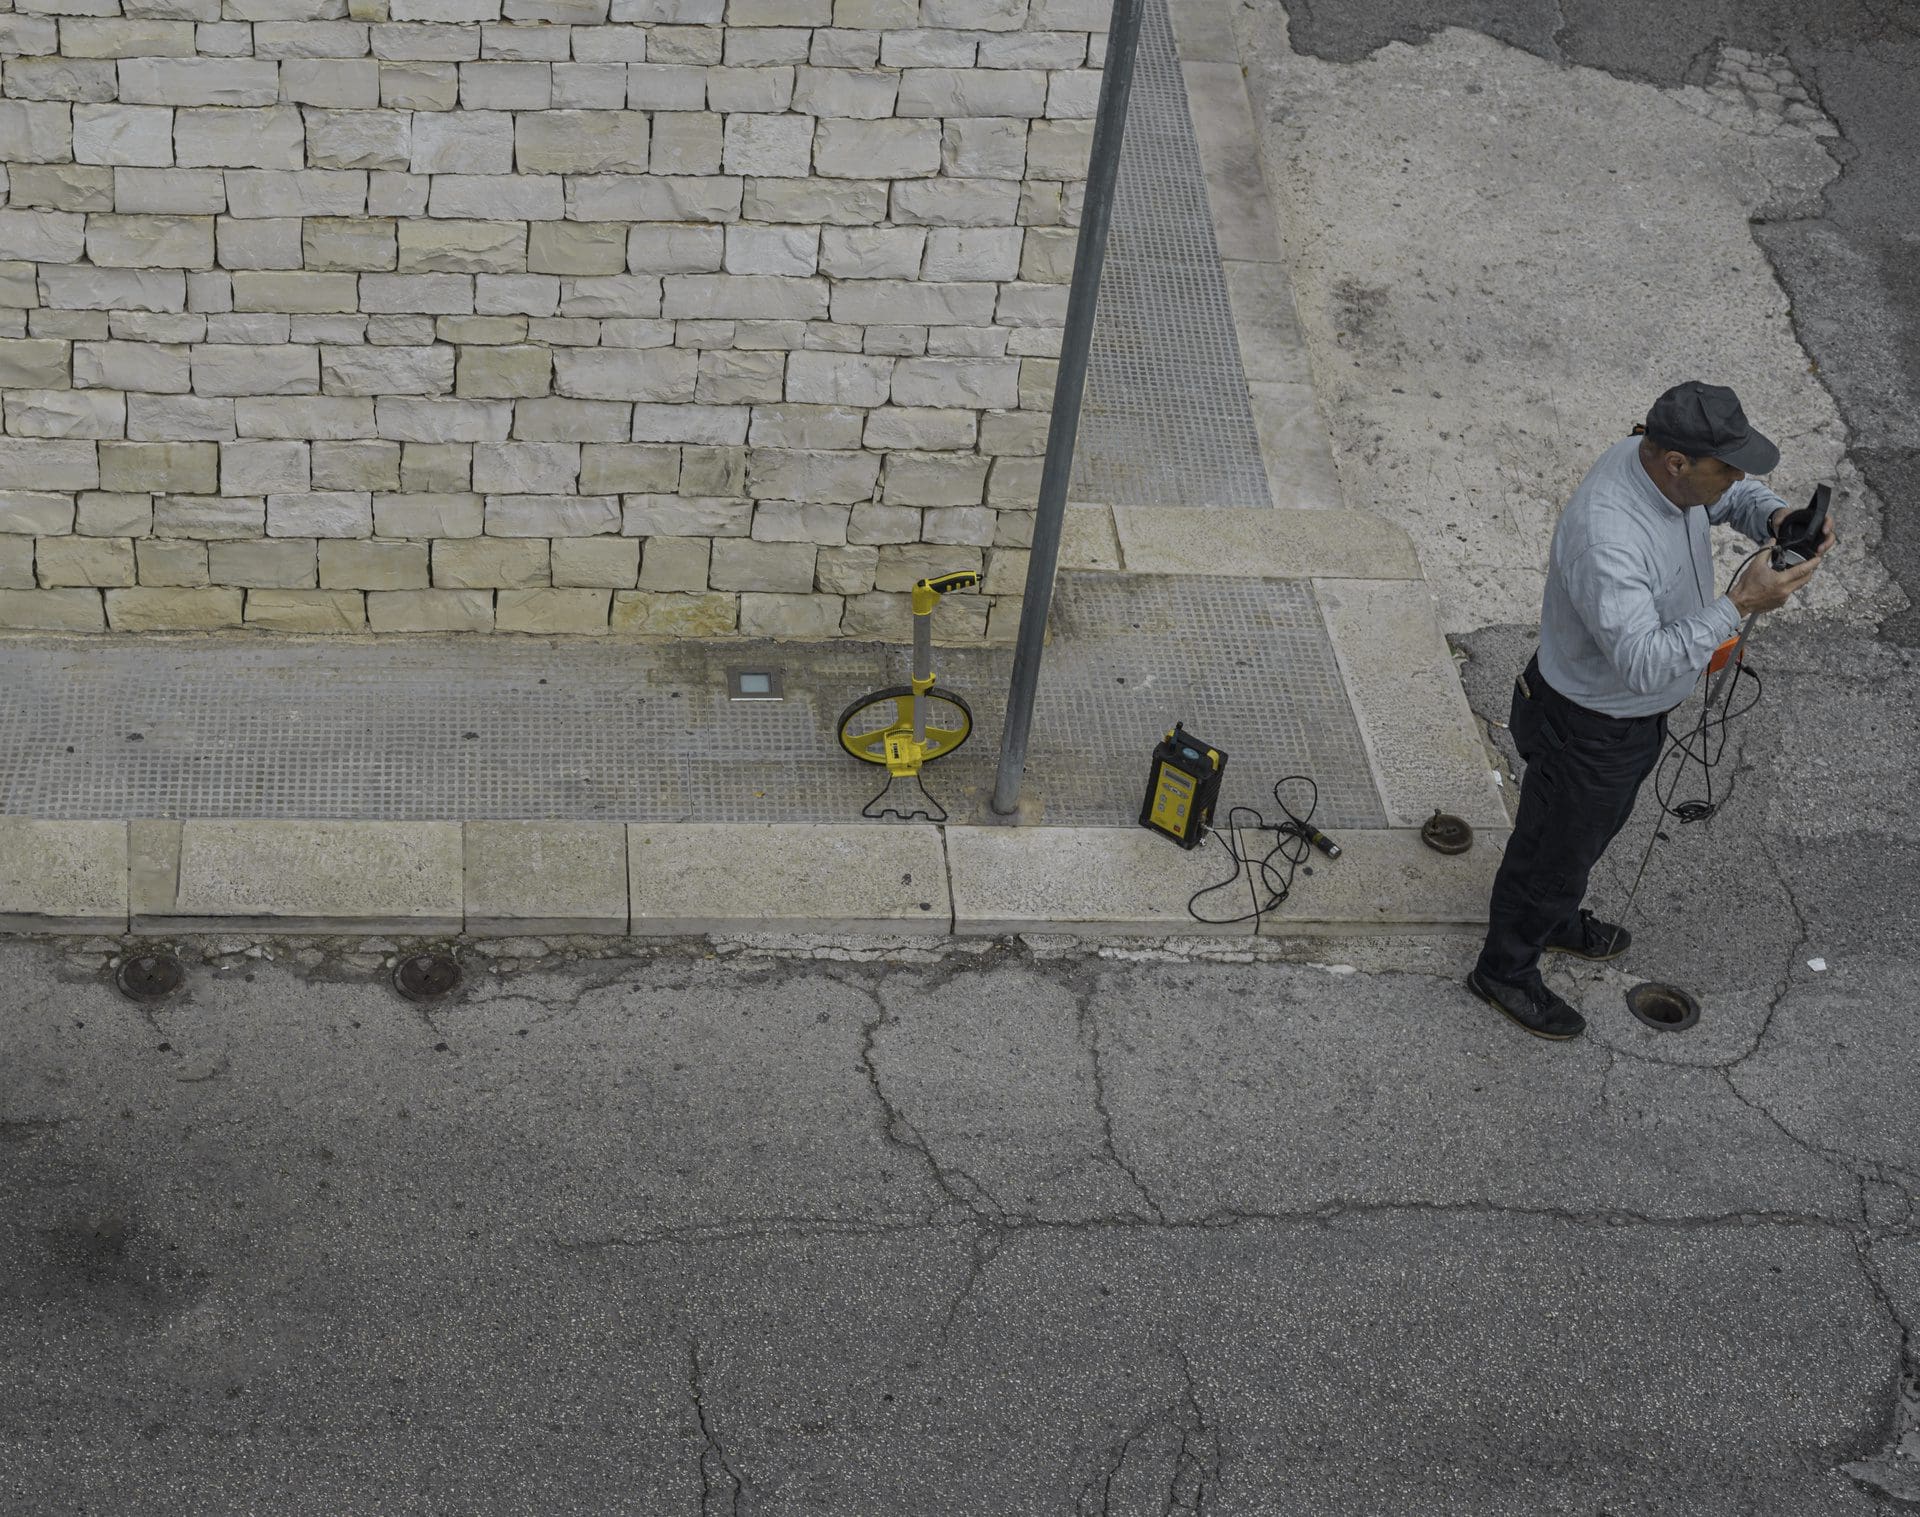 Rohrbruchortung draußen auf der Straße vor dem Gebäude - Experten nutzen für die Leckortung unterschiedliche Technik (© peuceta / stock.adobe.com)